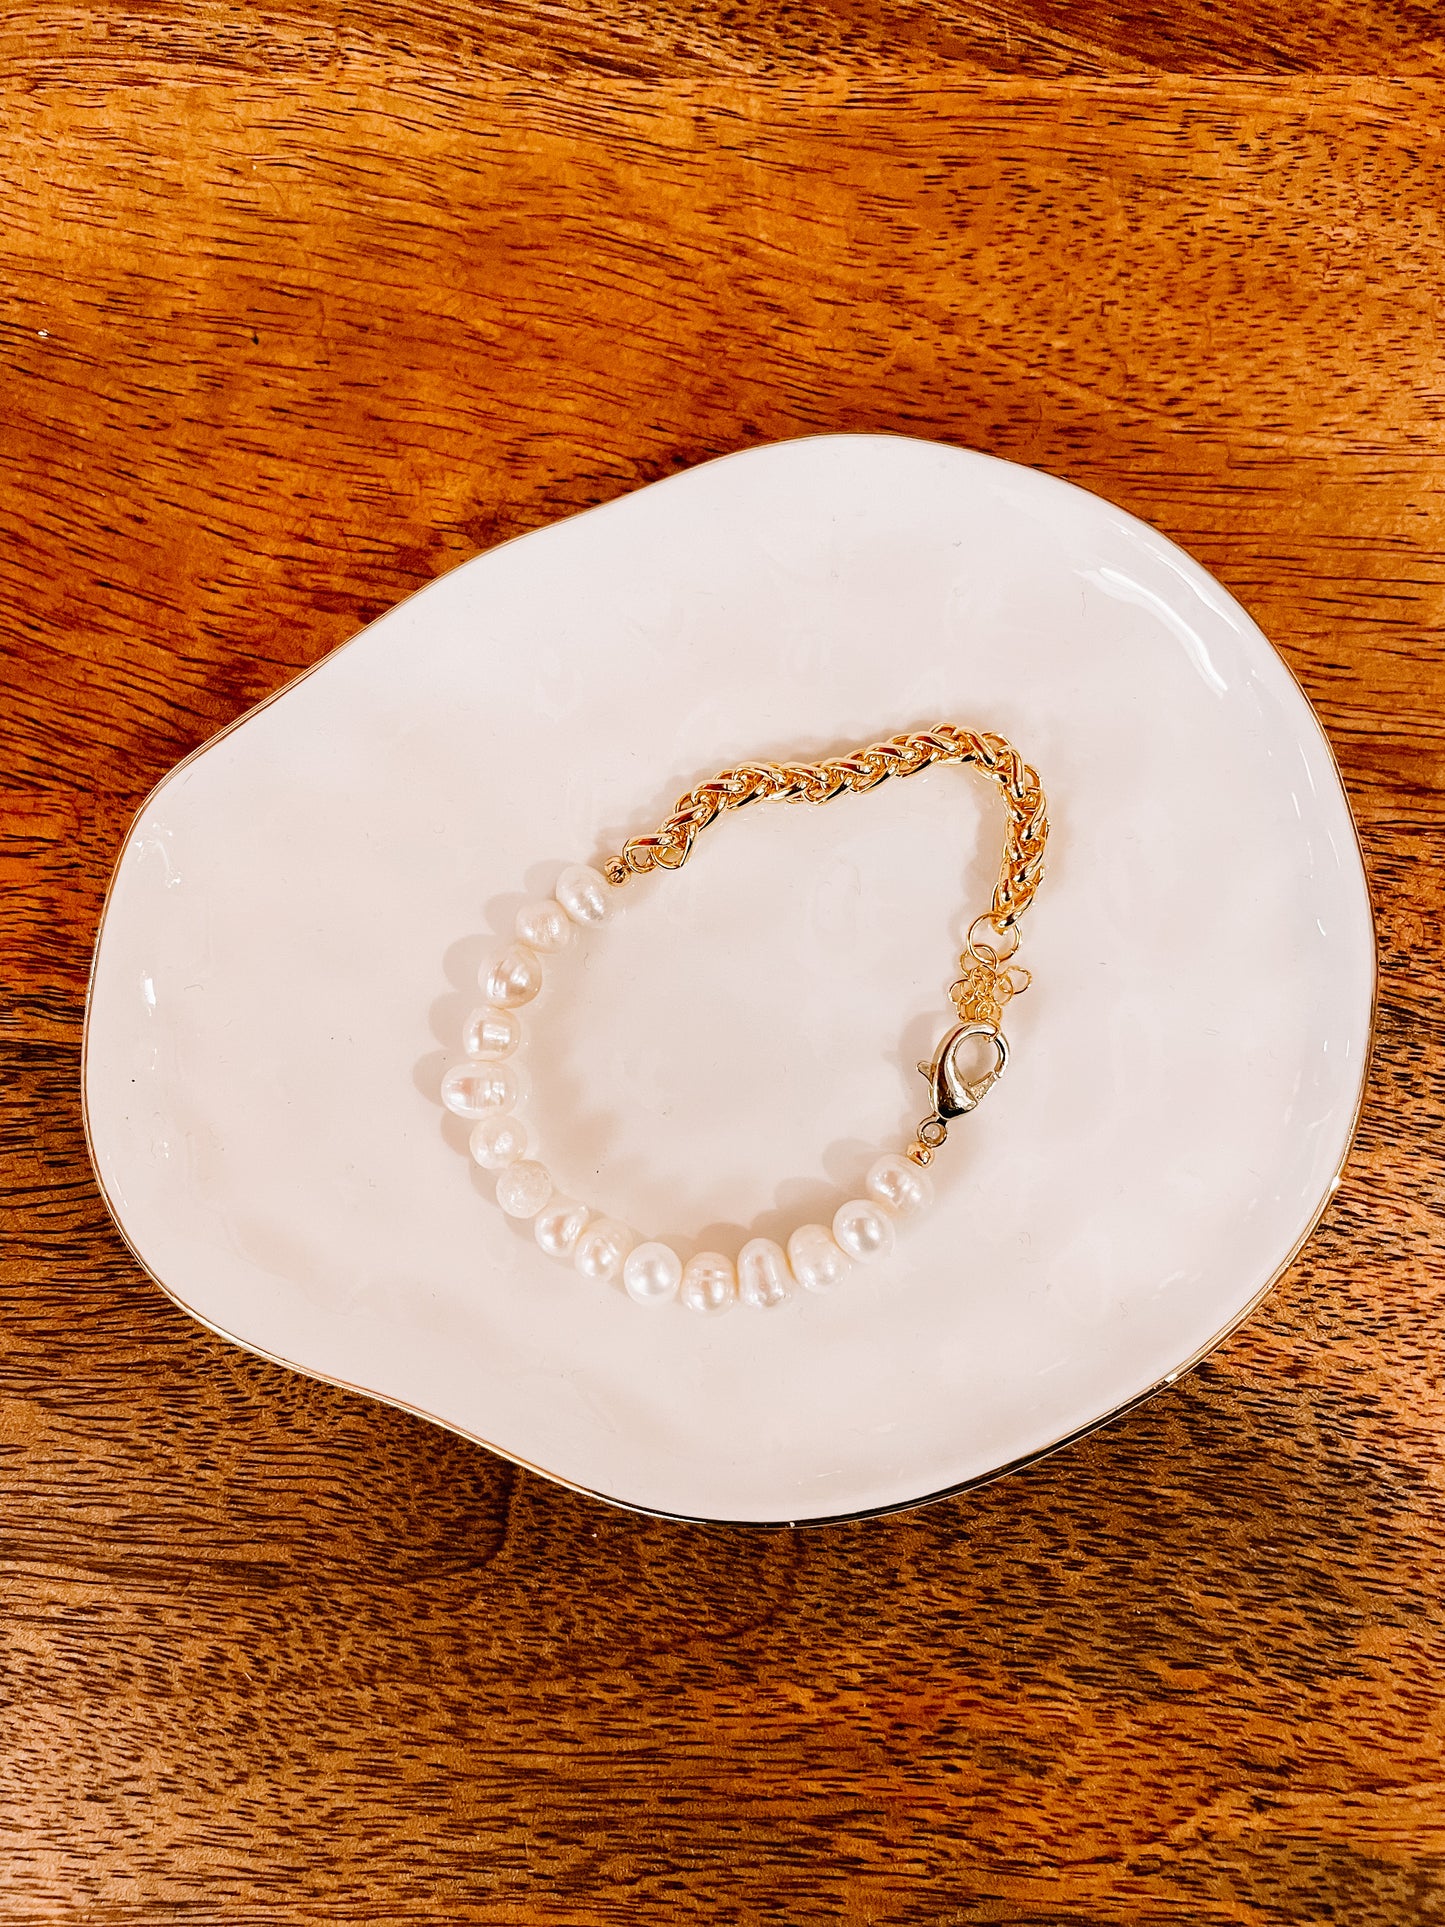 Coco pearl bracelet